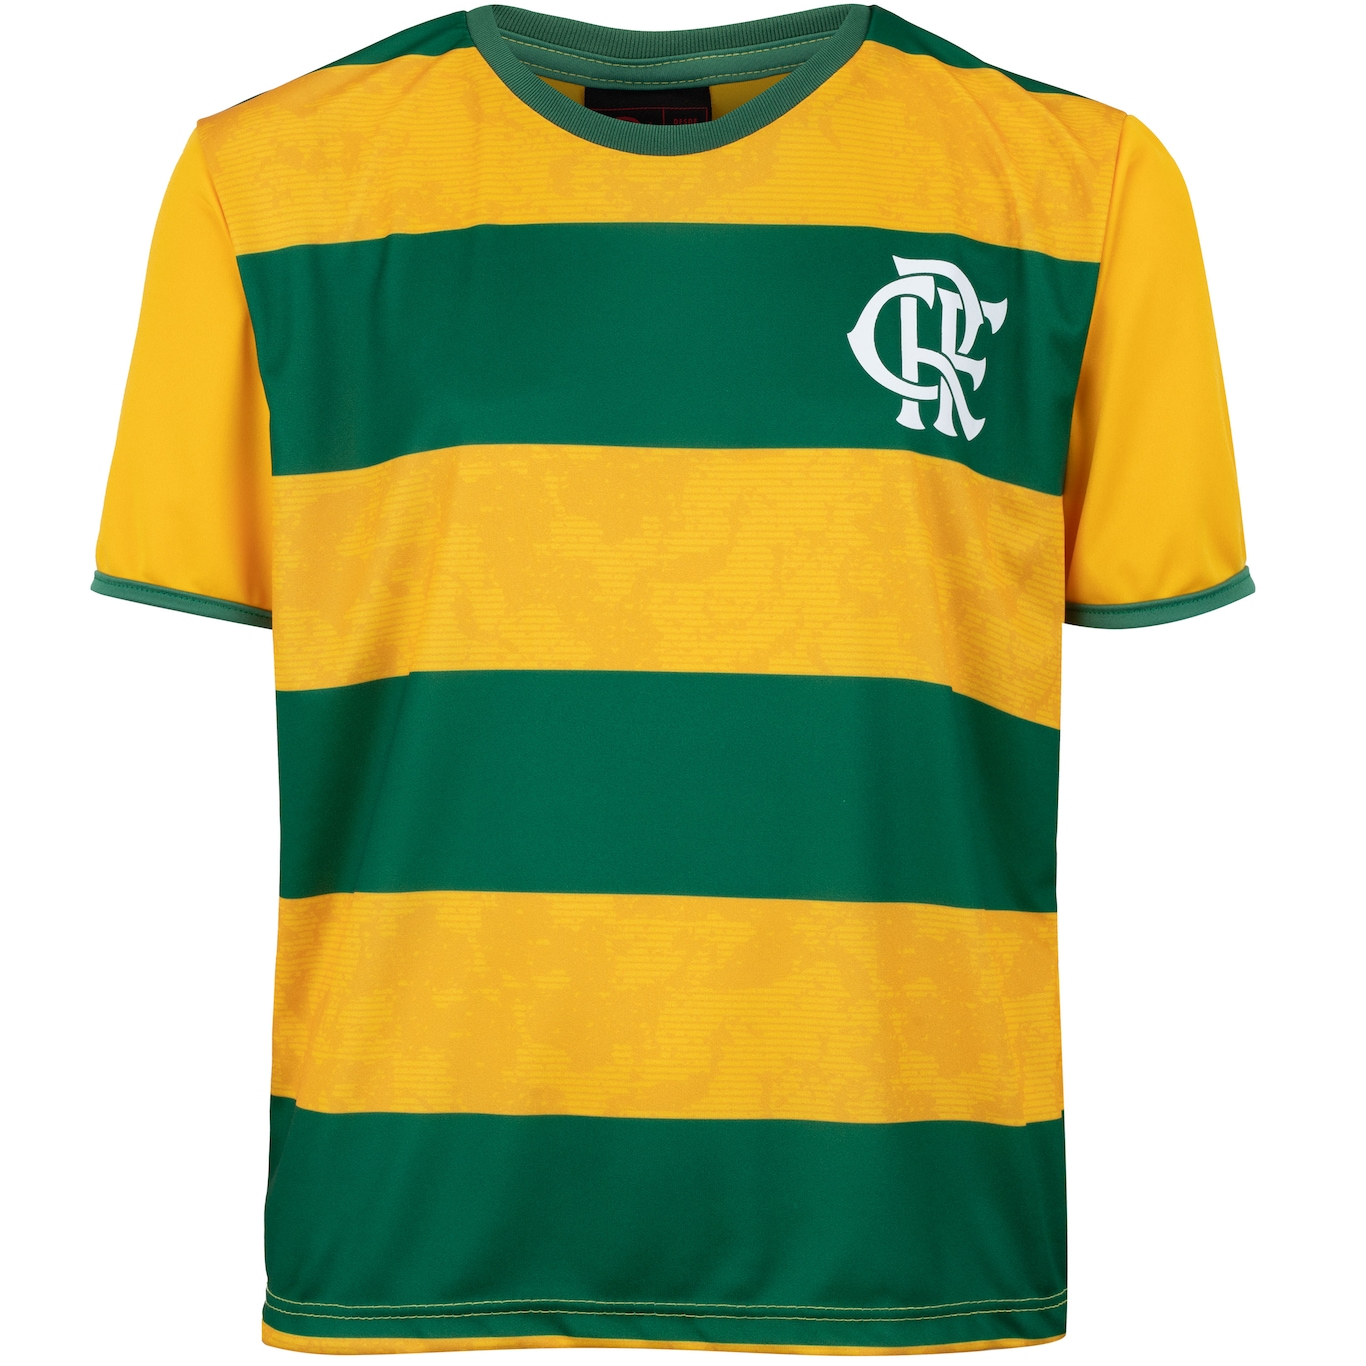 Bola Oficial do Flamengo Amarela e verde Tamanho 5 - Boutique Futebol